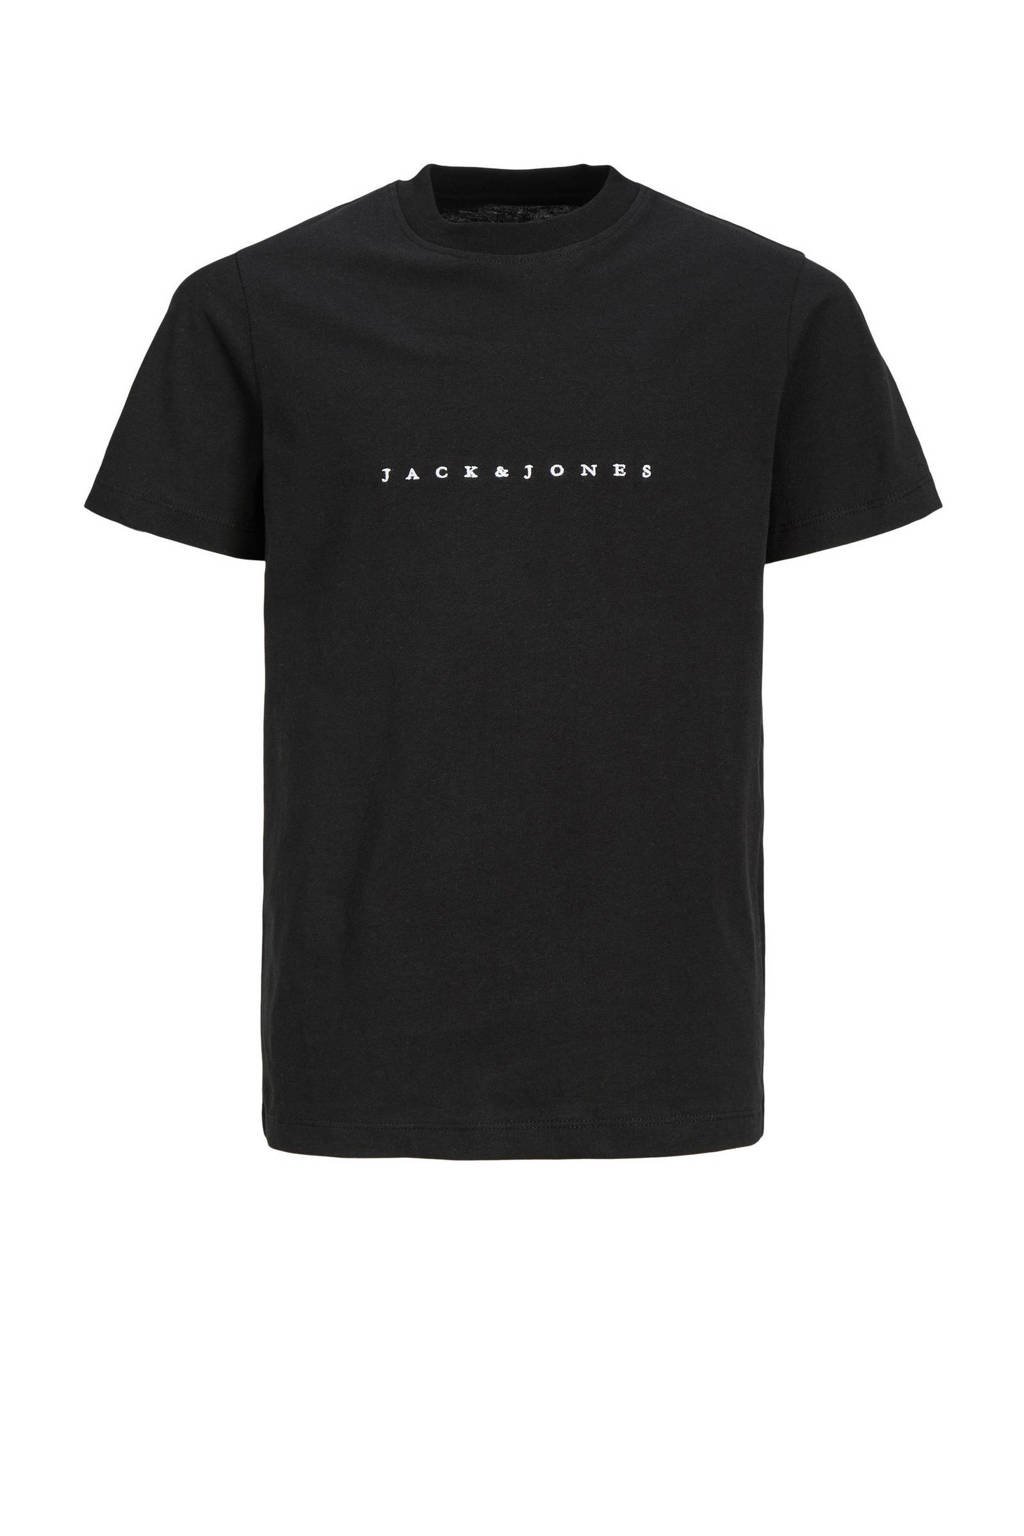 JACK & JONES JUNIOR T-shirt JORCOPENHAGEN met logo zwart